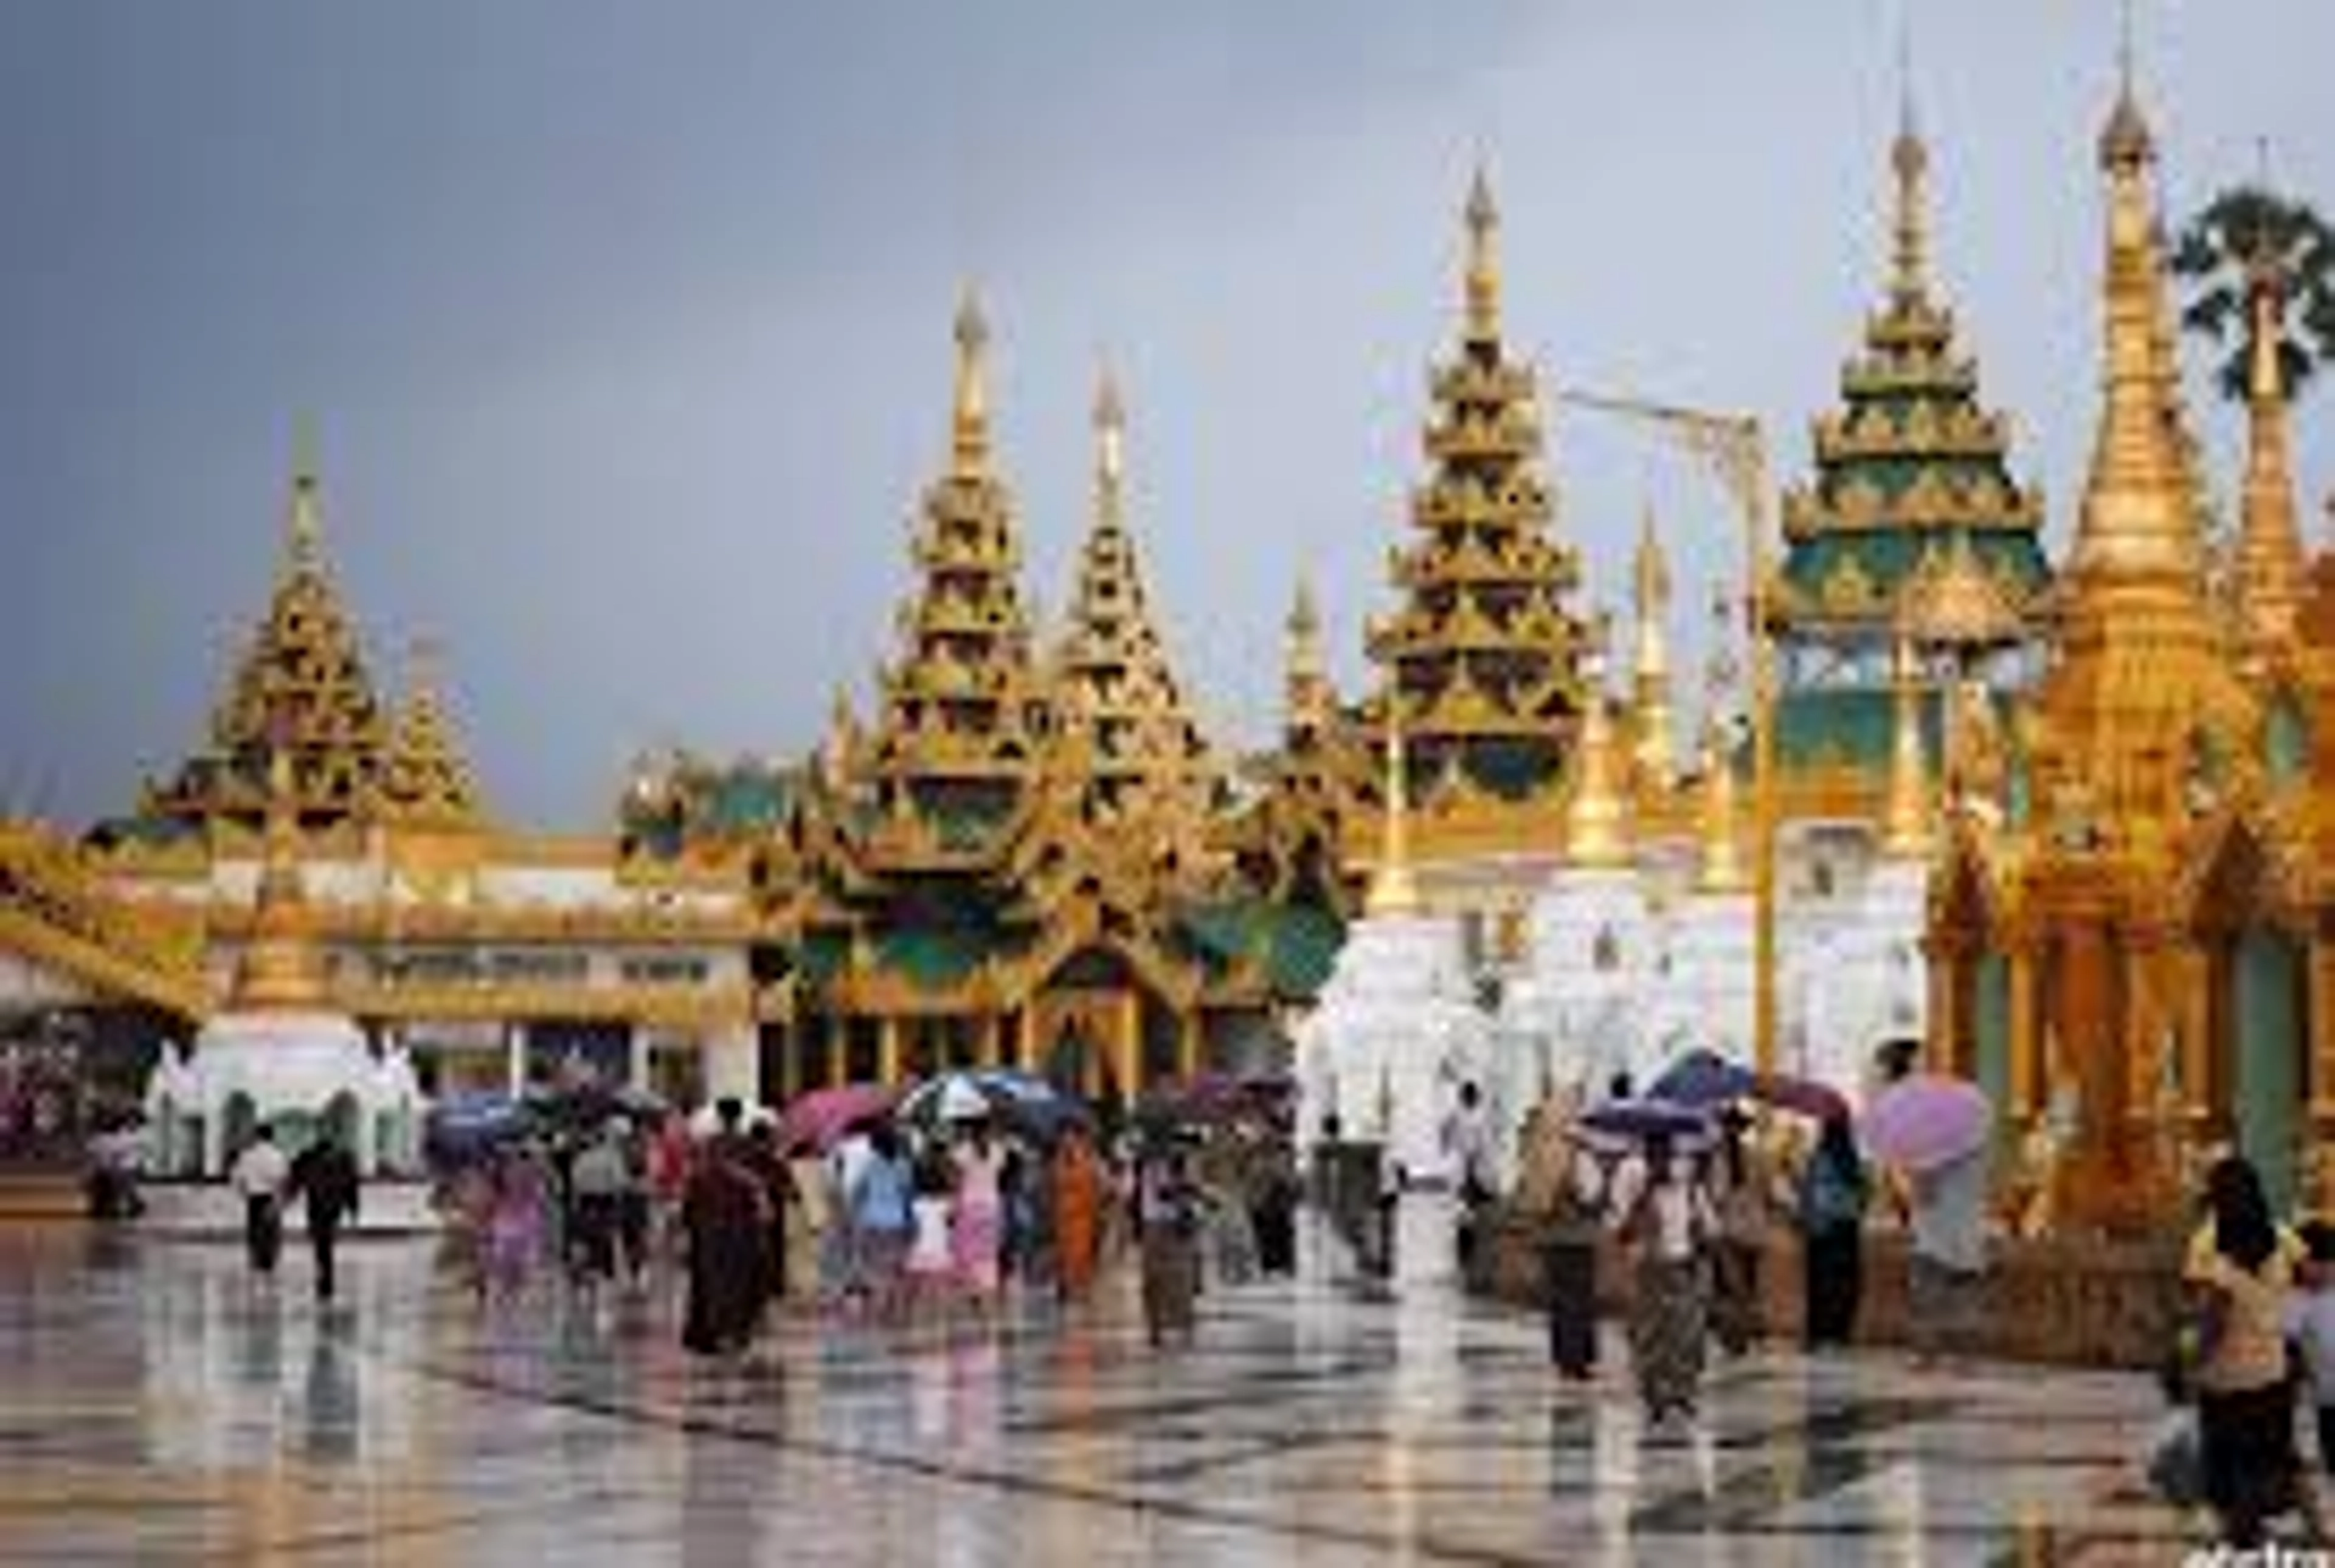 Wat Ban Tham là một ngôi chùa nổi tiếng nằm tại tỉnh Kanchanaburi